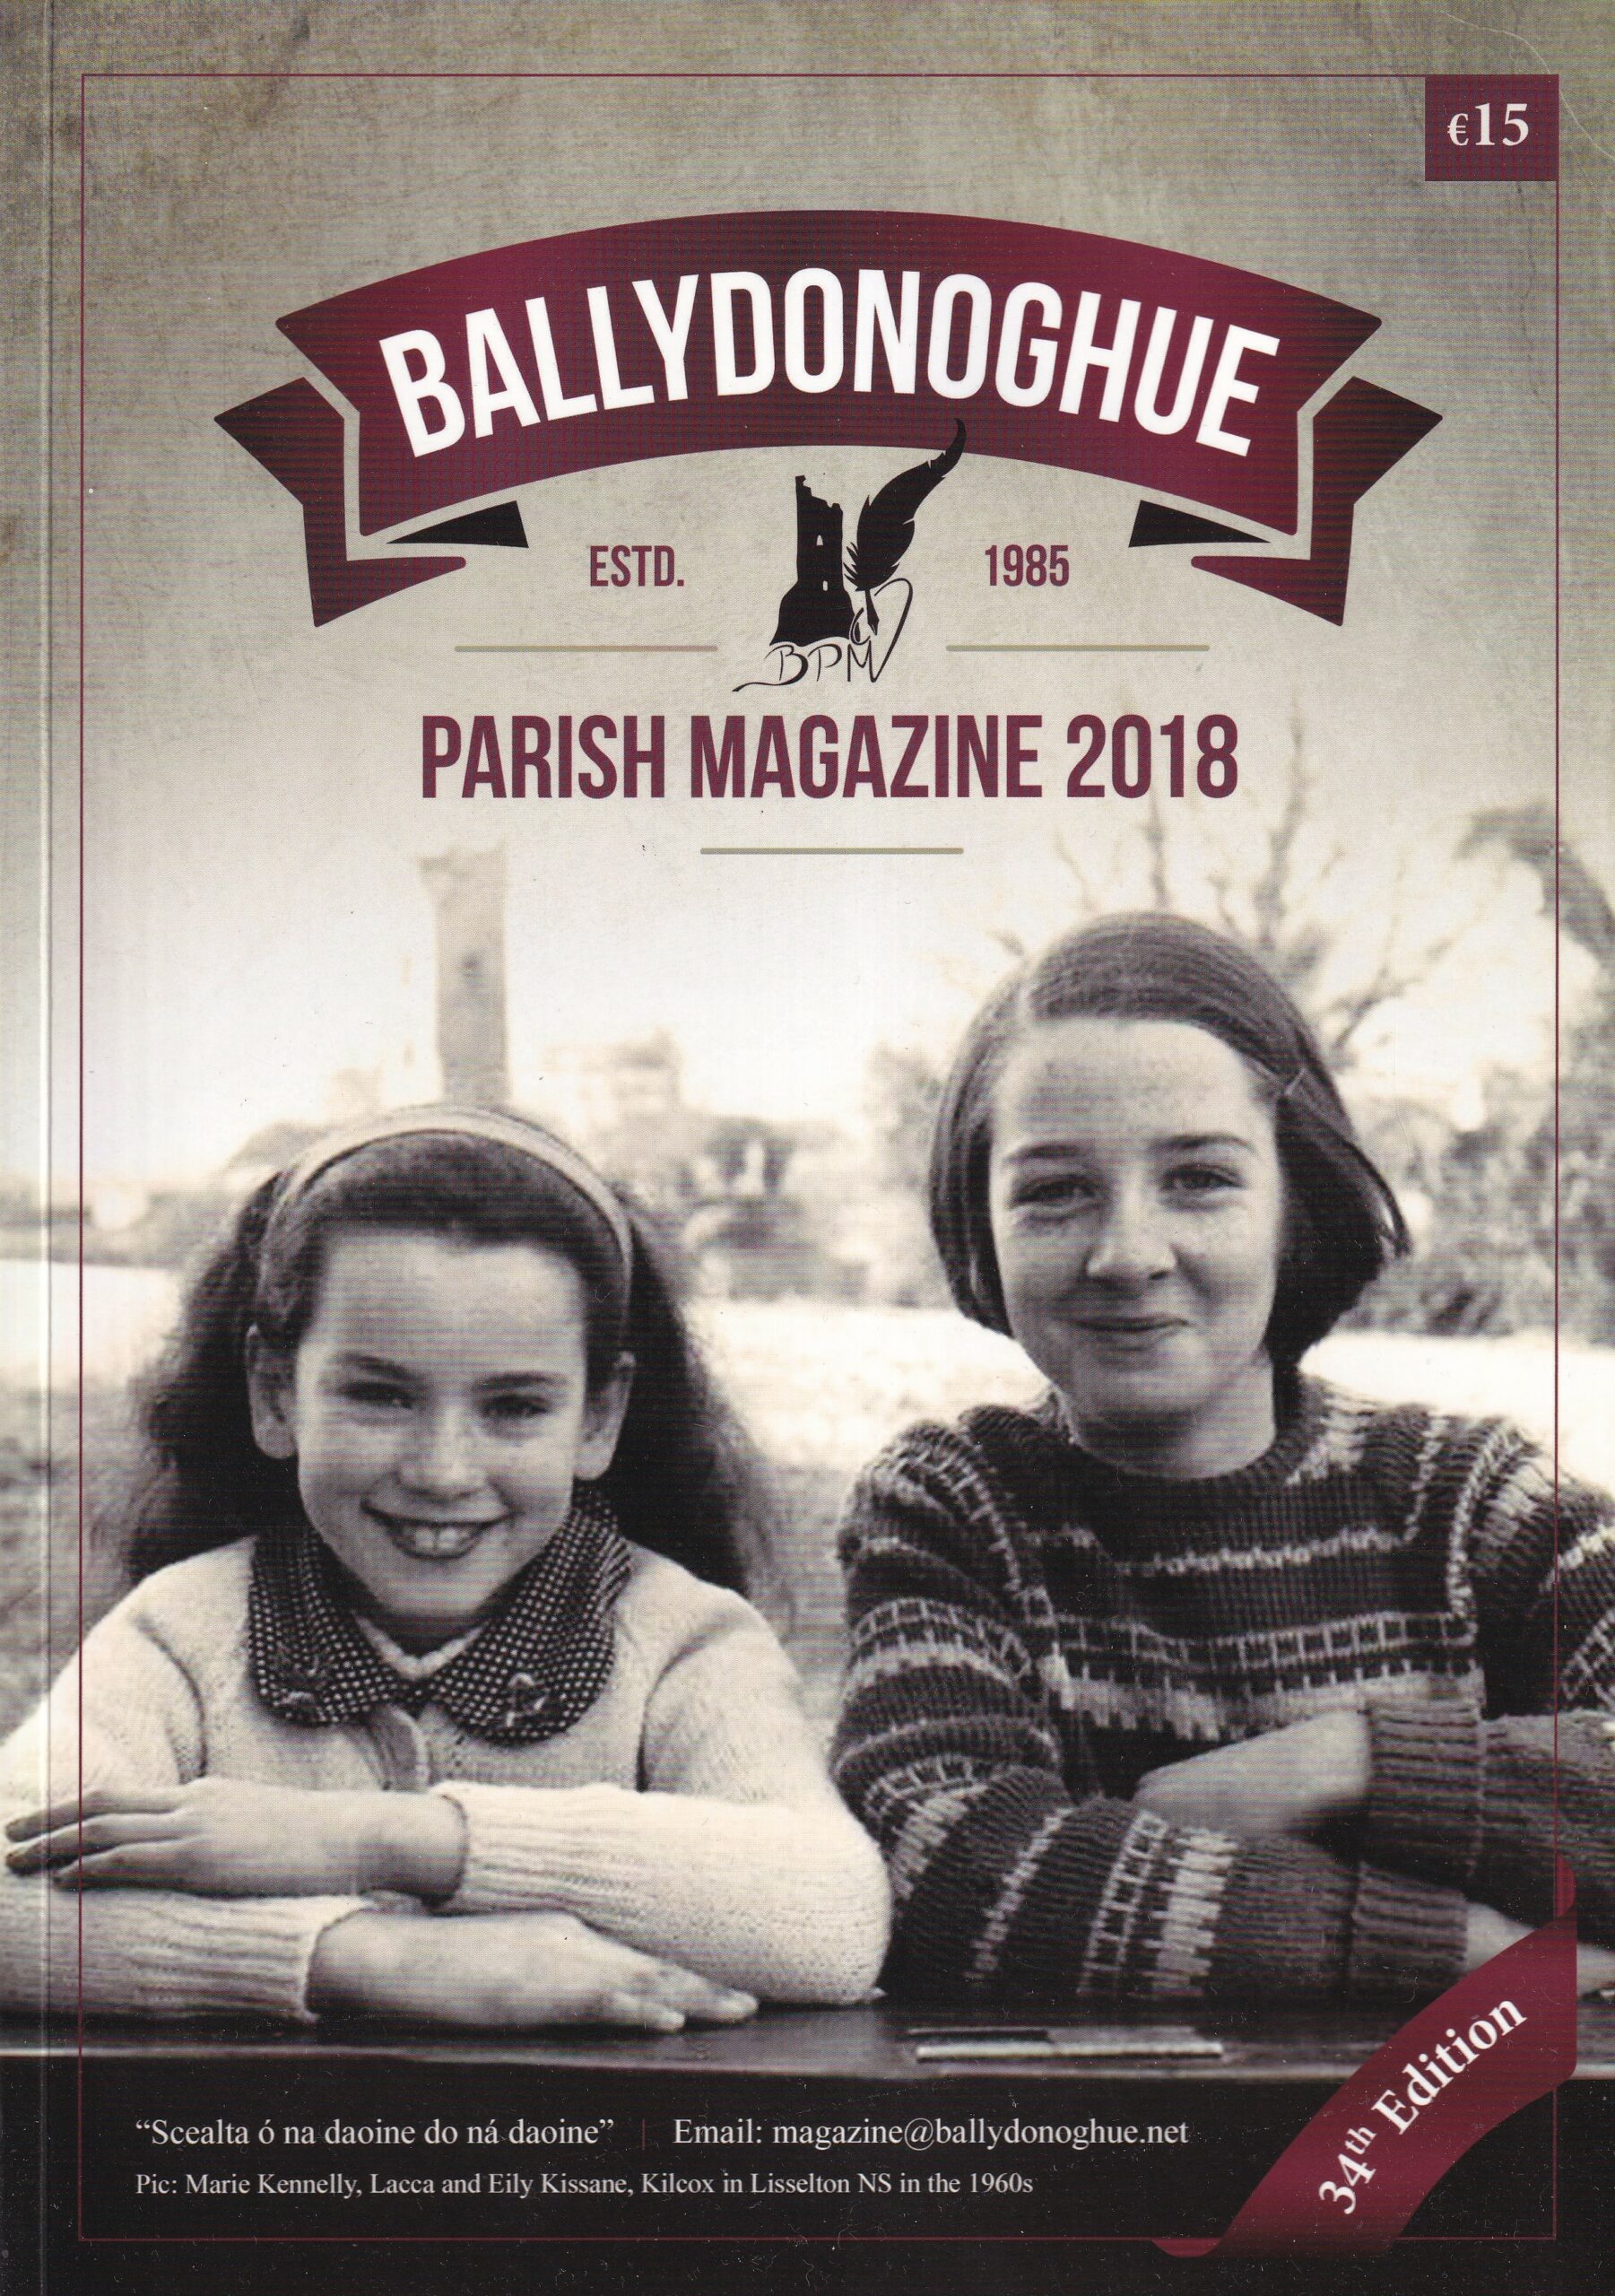 Ballydonoghue Parish Magazine 2018 | Ballydonoghue Parish | Charlie Byrne's